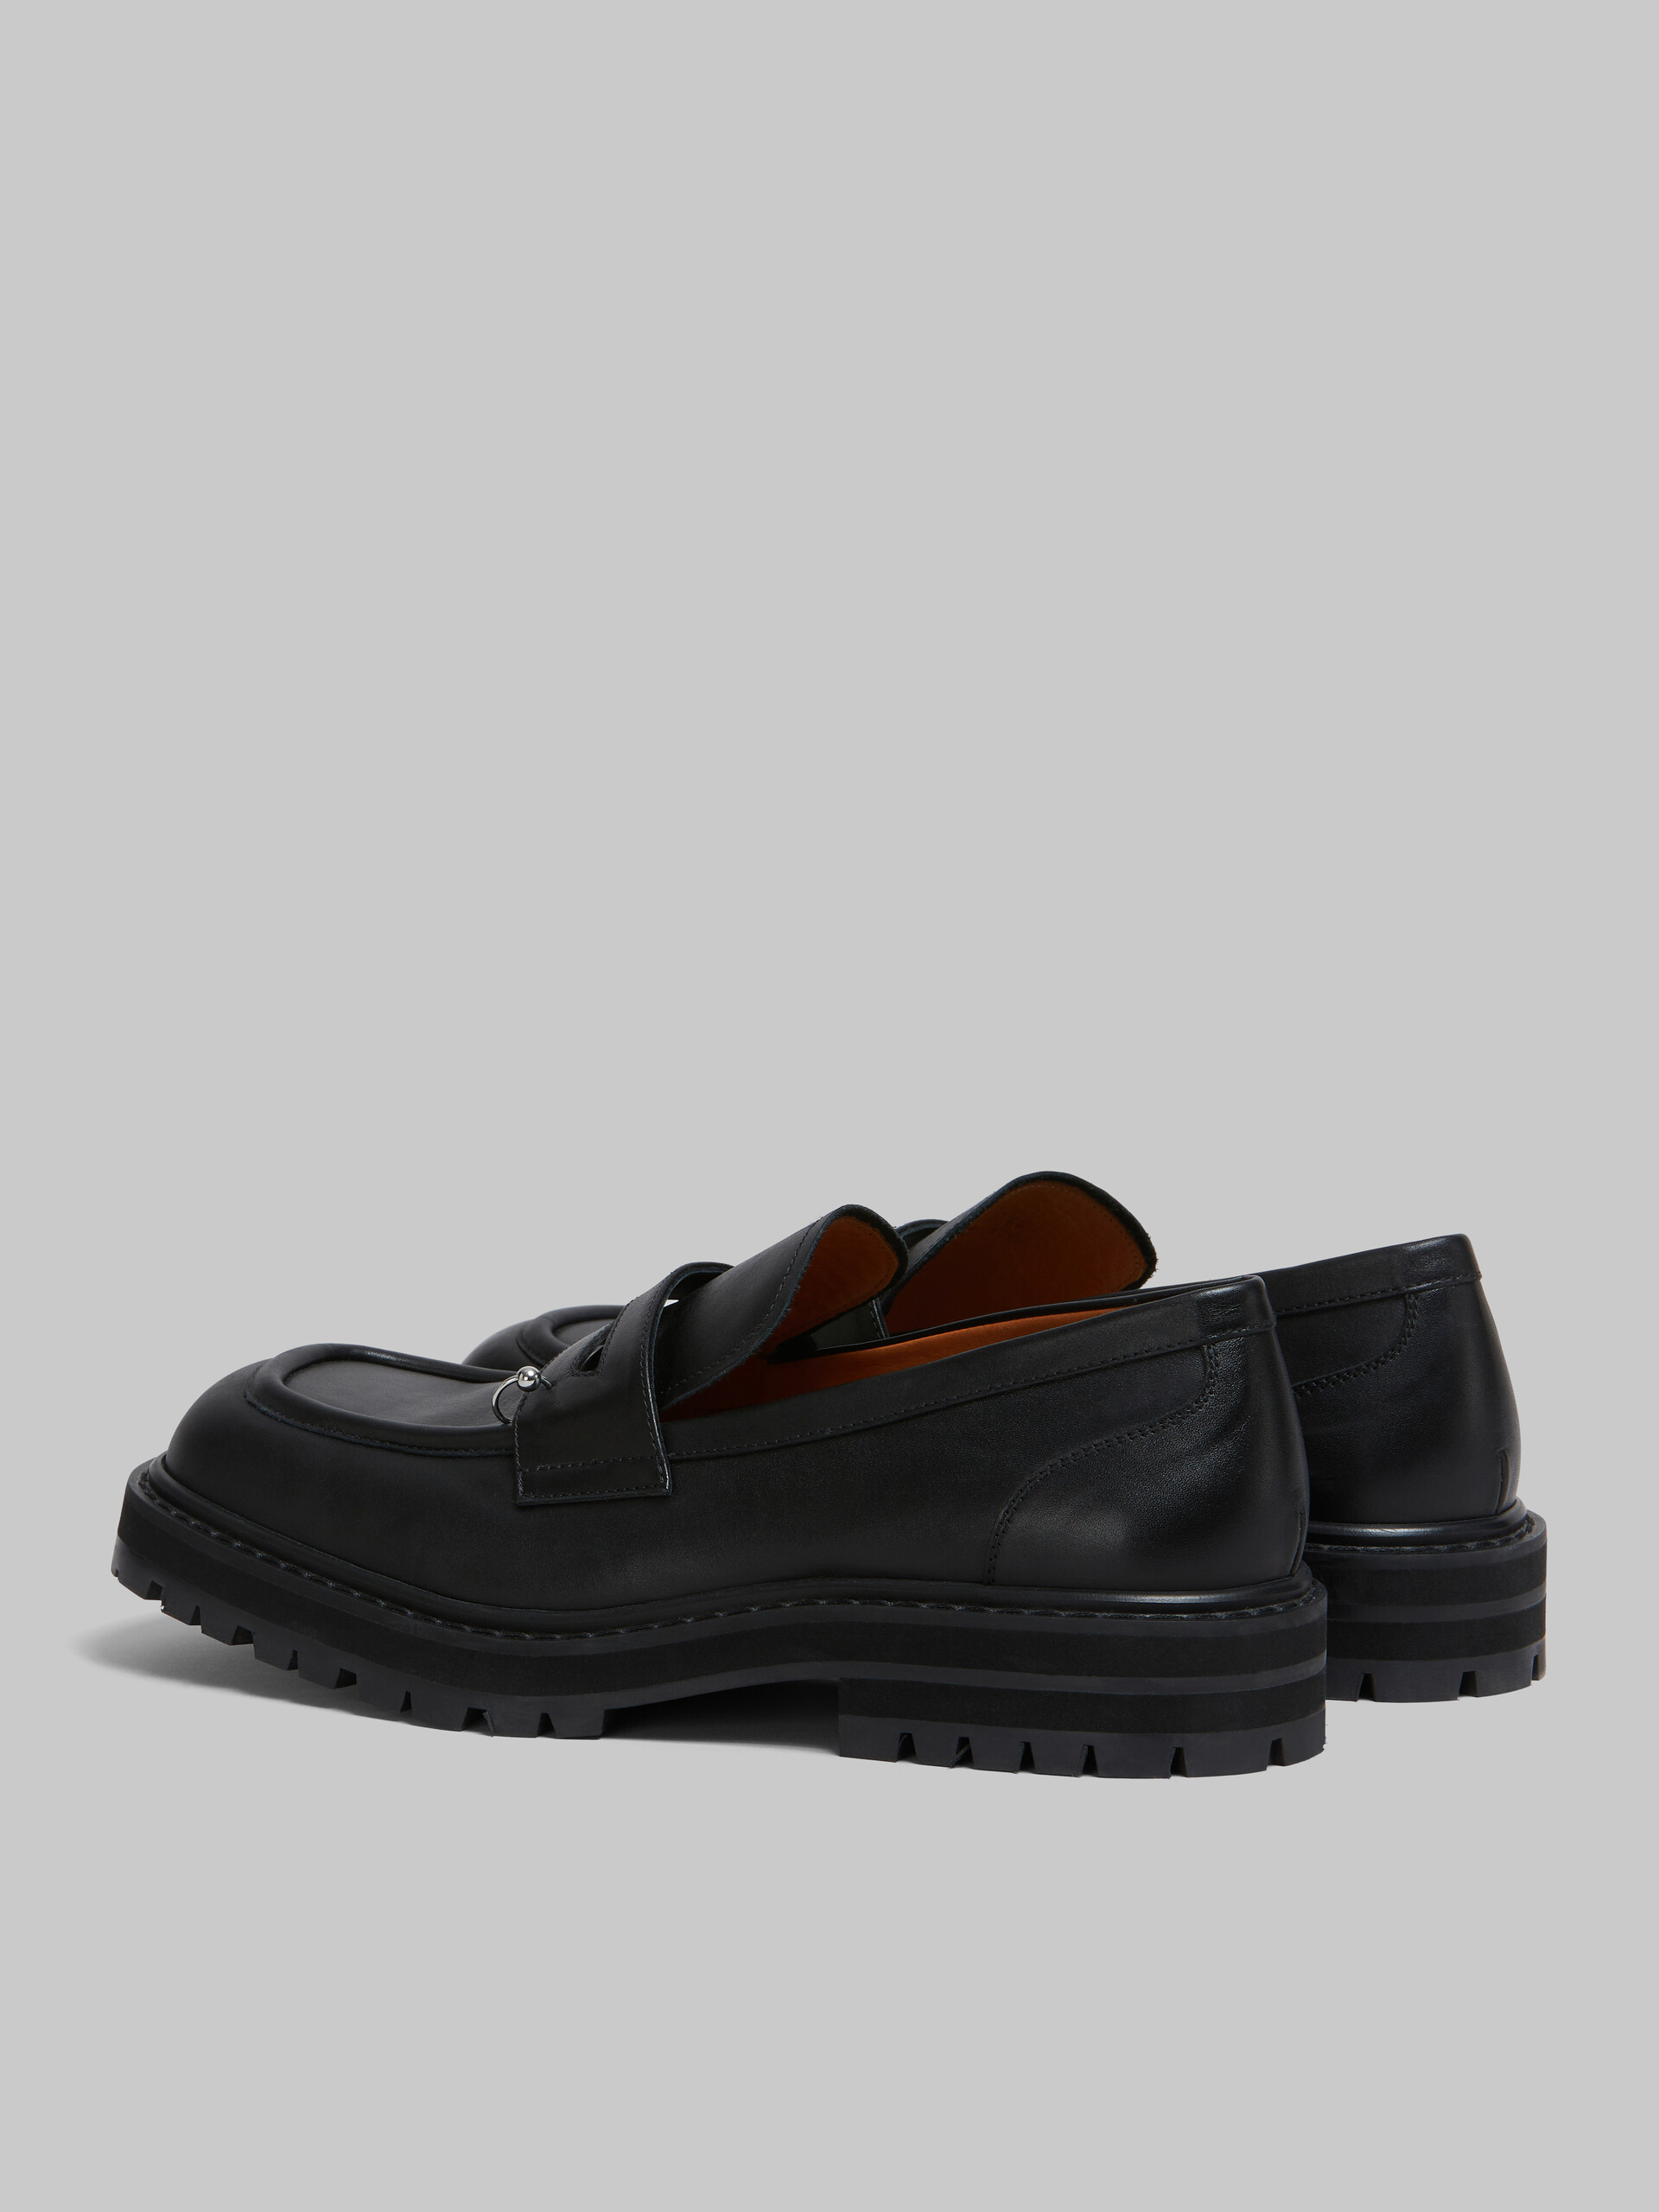 Mocasín grueso Piercing 2.0 de piel negra - Zapatos con cordones - Image 3